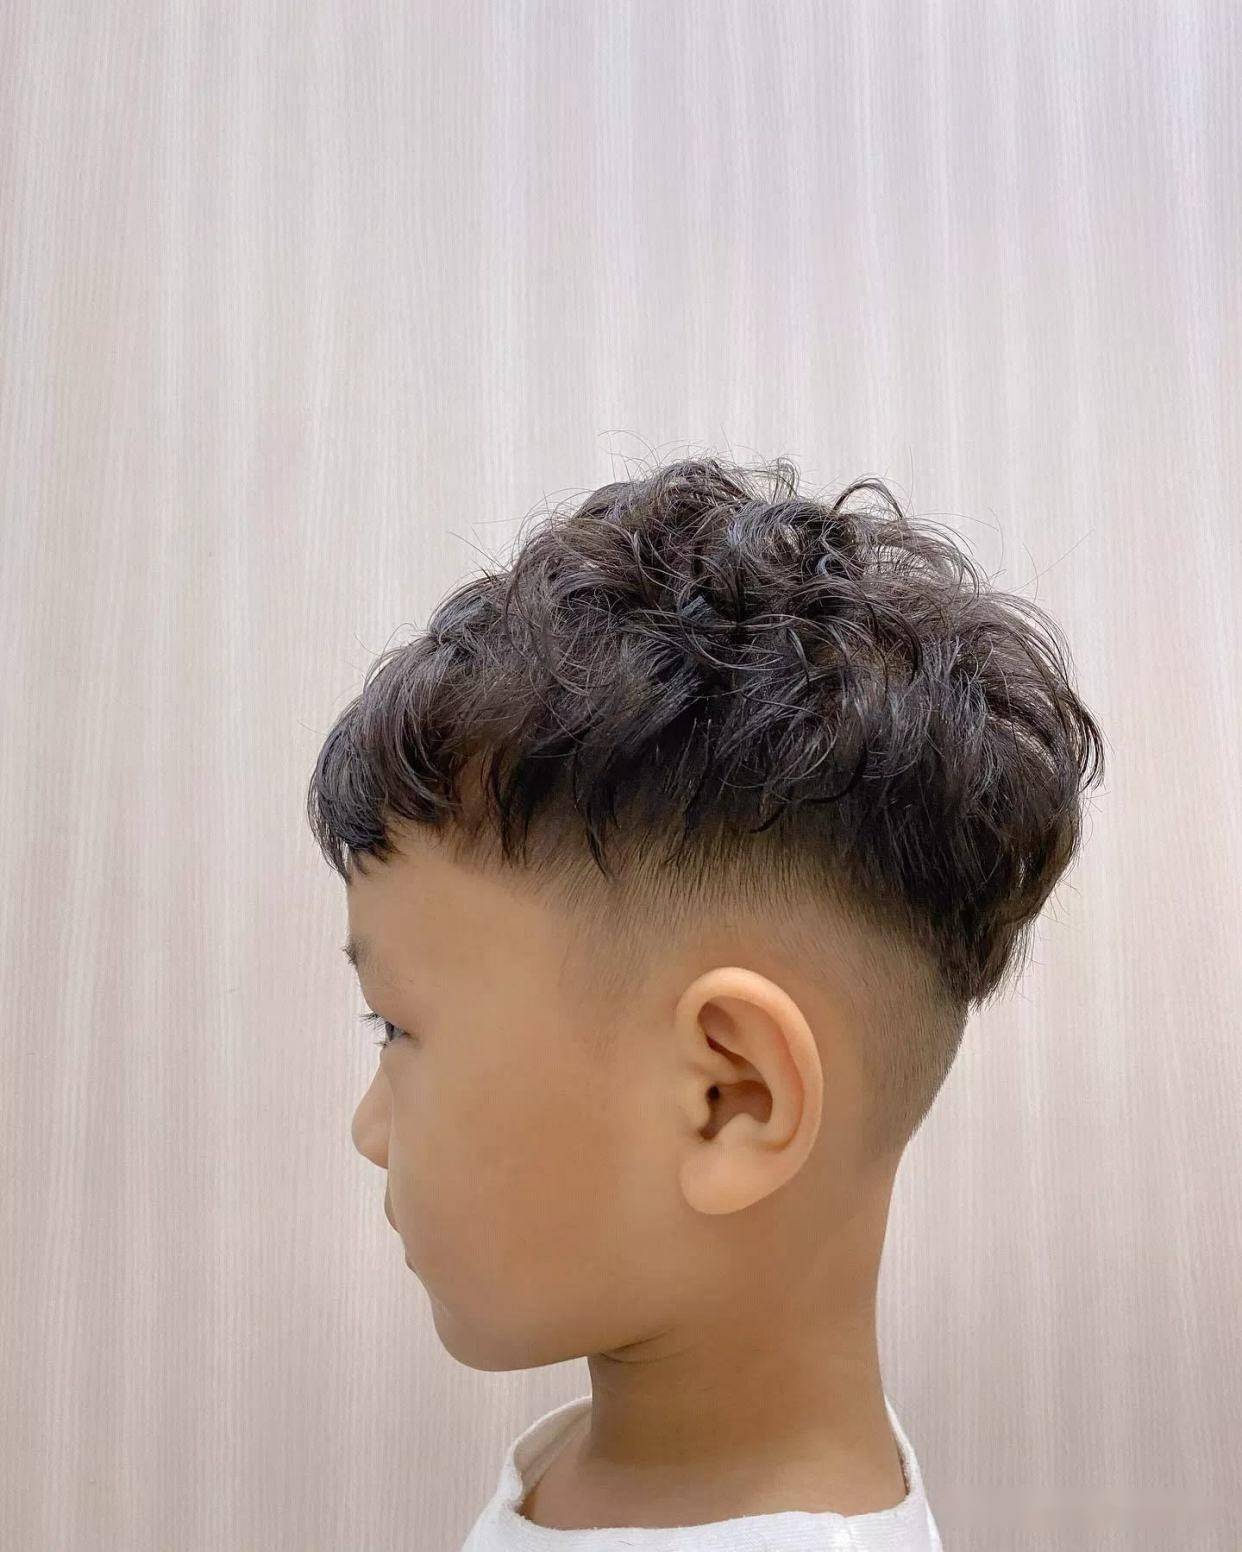 头发比较粗硬的小男孩,烫发的时候可以把周边的头发铲短,能很好地避免